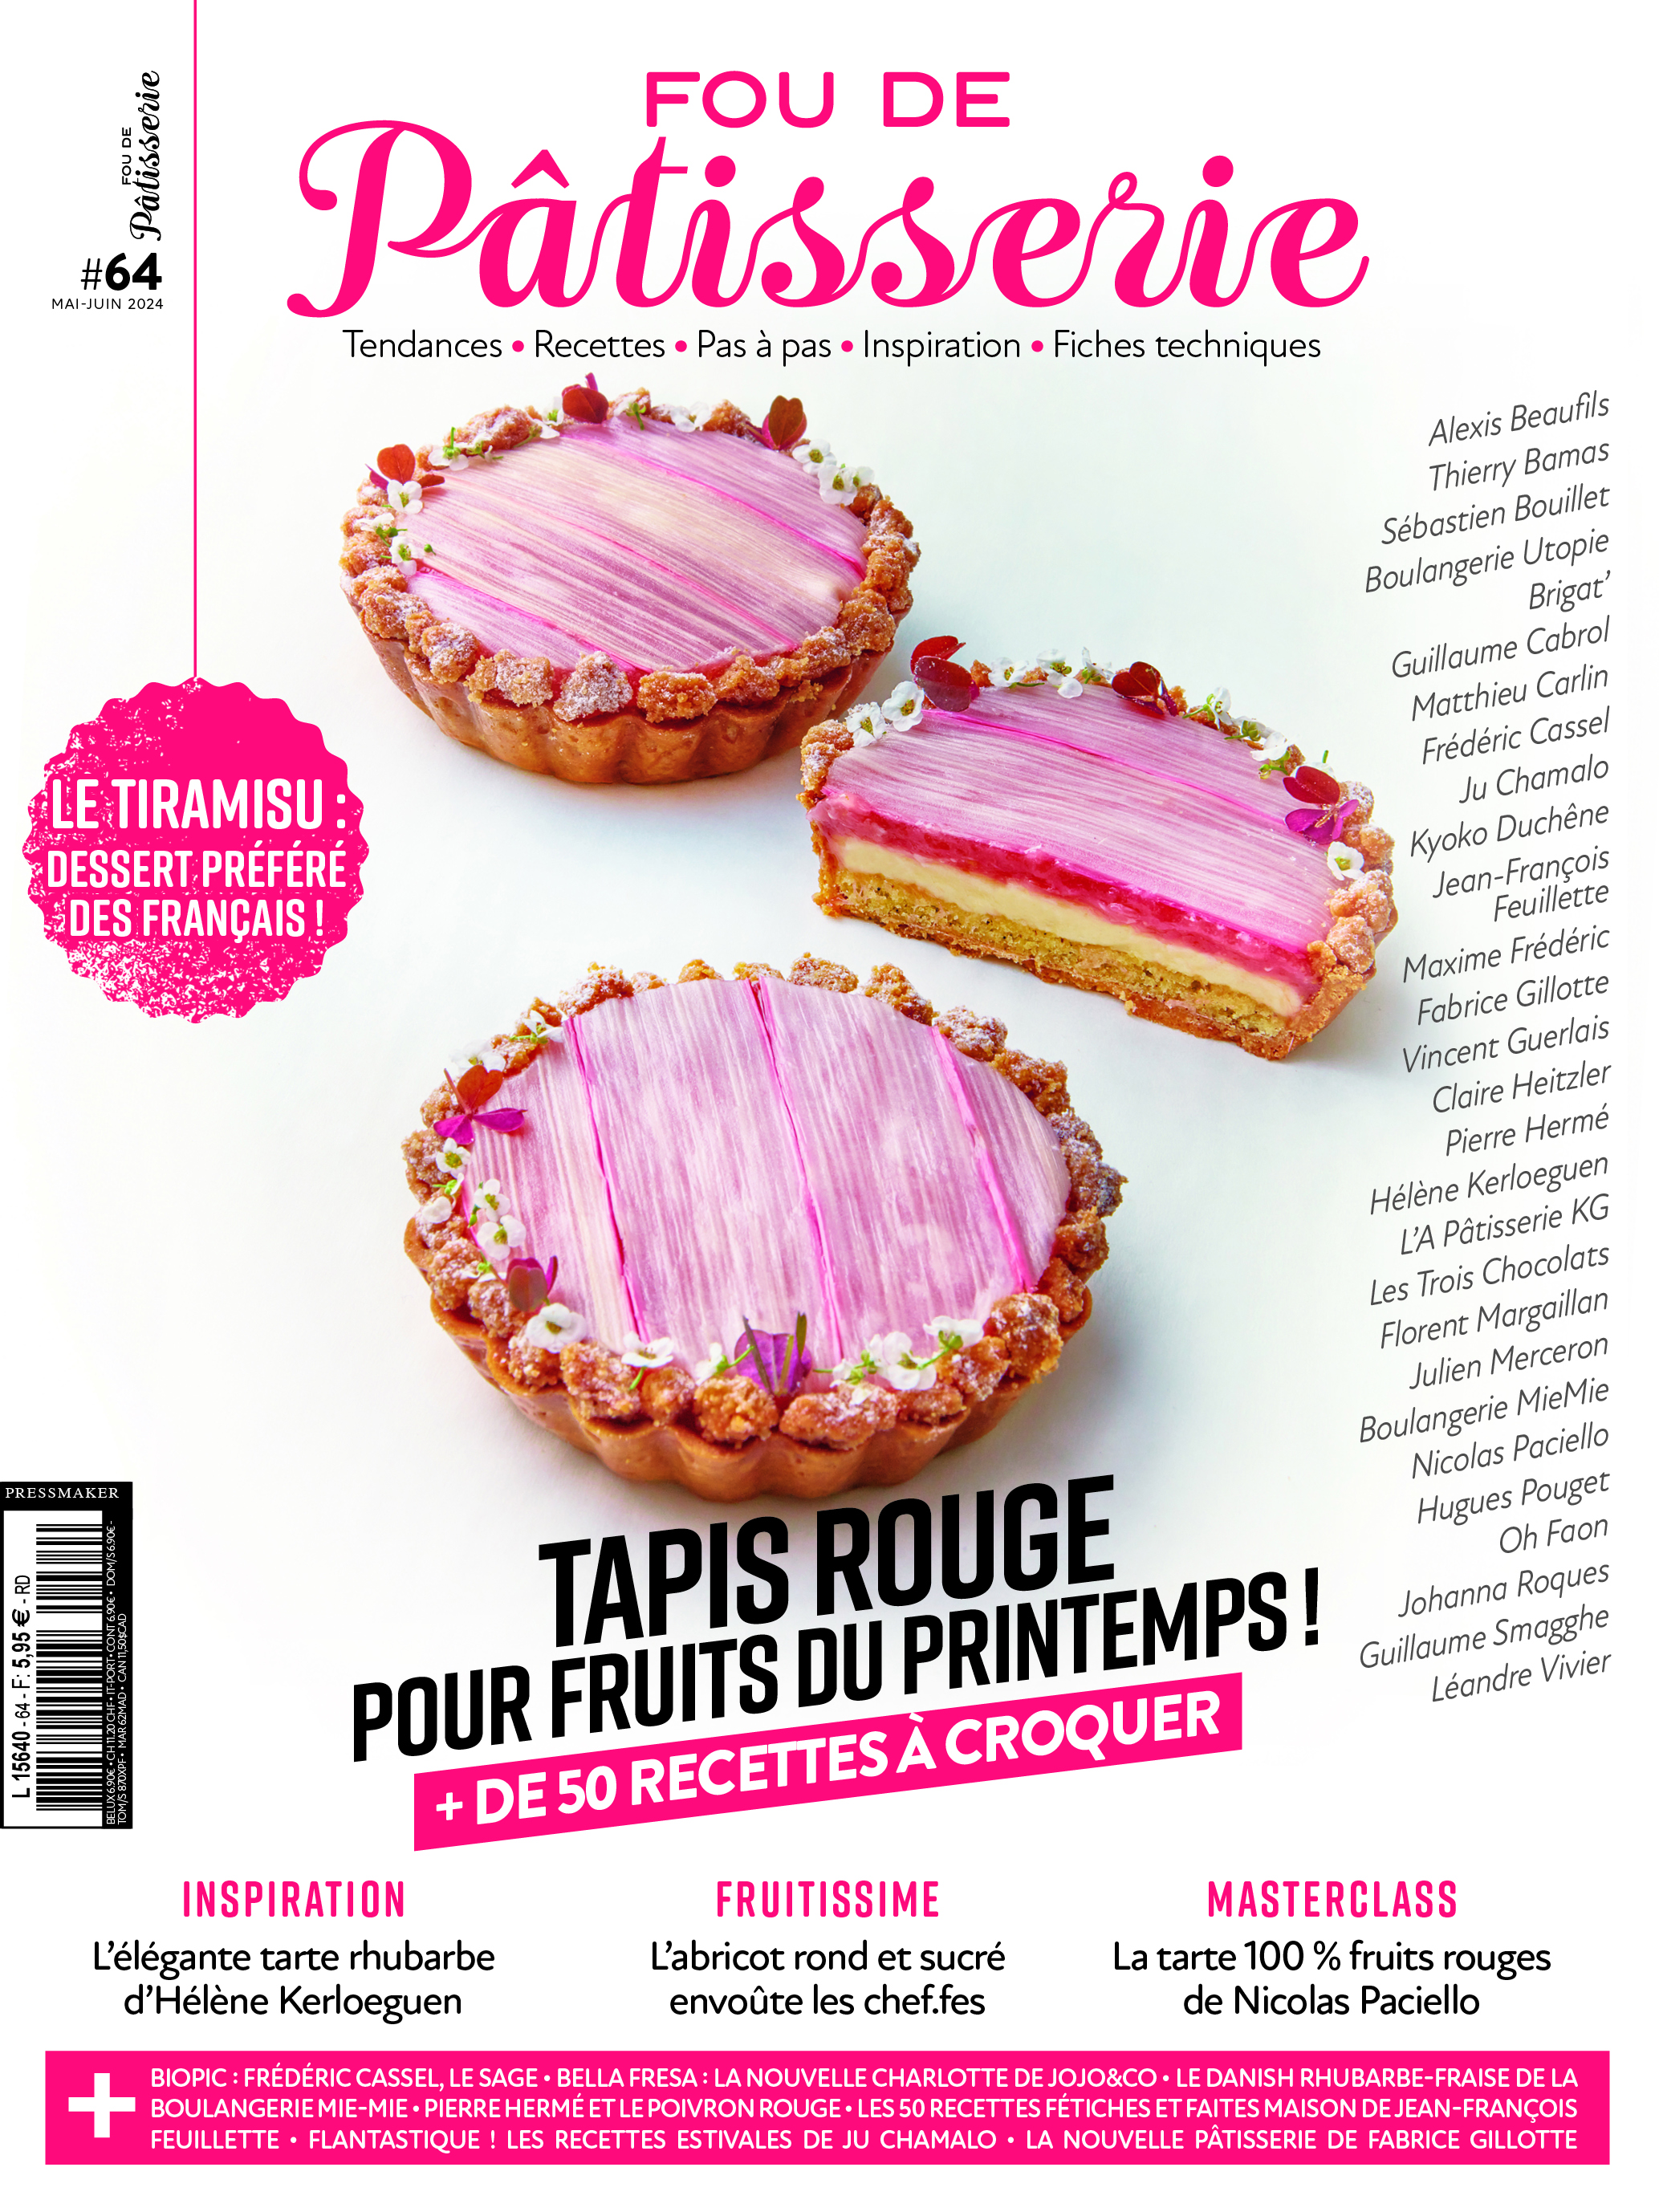 N°64 - Magazine Fou de pâtisserie